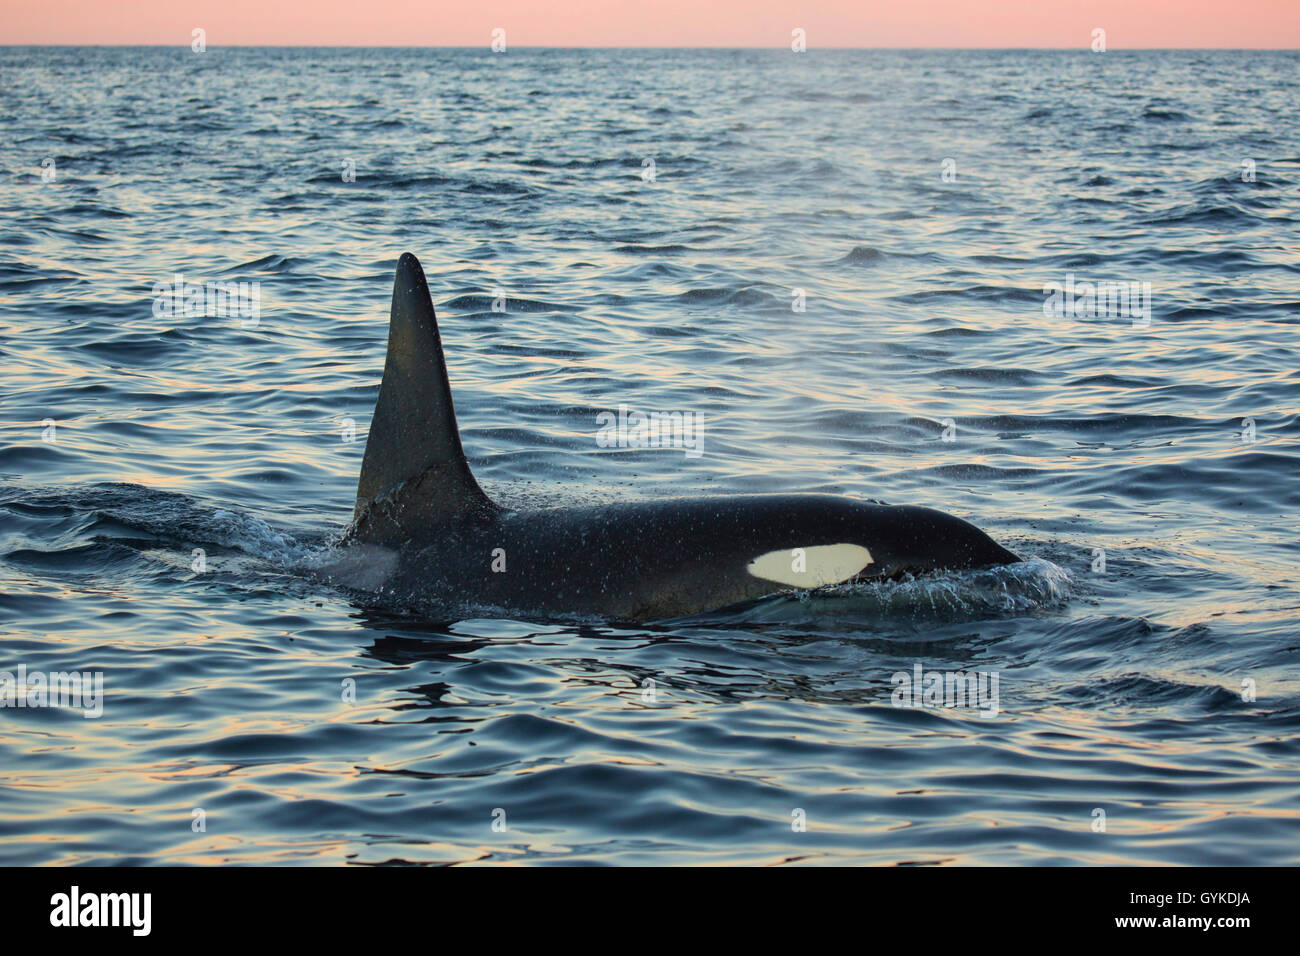 Orca, grand, de l'épaulard (Orcinus orca) grampus, grand mâle qui souffle dans l'océan, vue de côté, la Norvège, Troms, Senja Banque D'Images